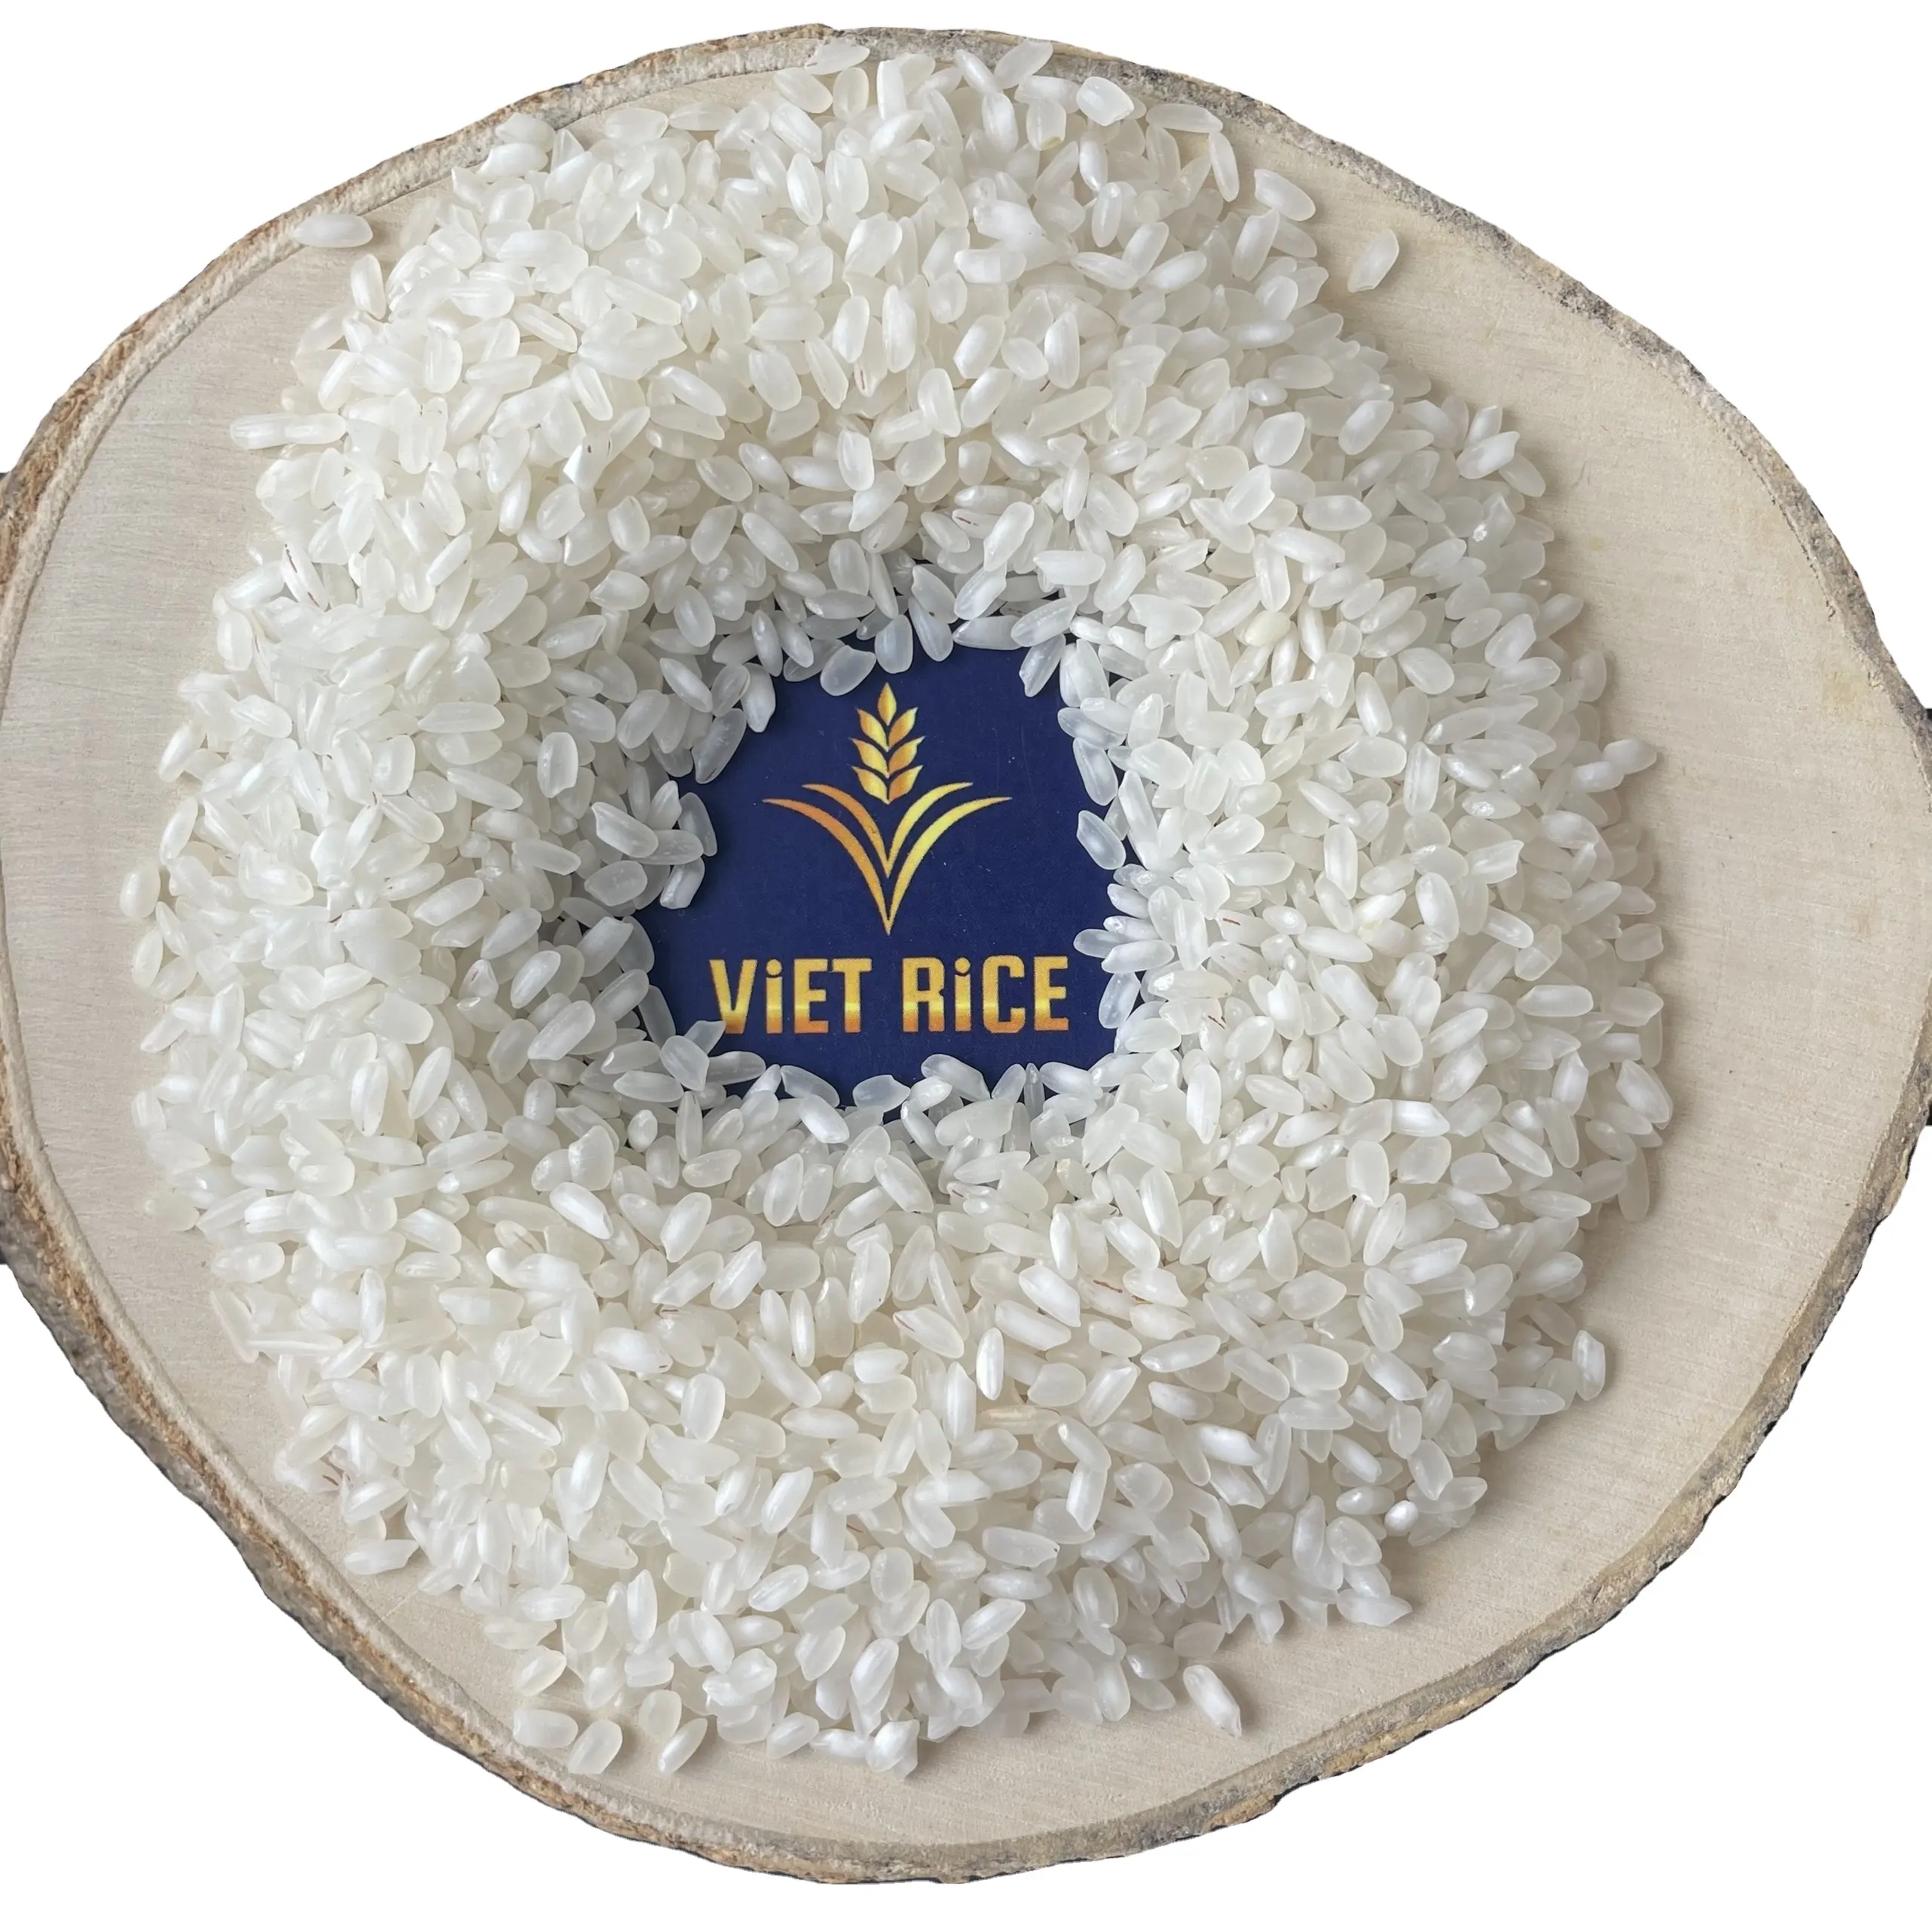 Премиум, средний рис, калроза, 5% сломанный, поставляемый из VietRice-ведущего производителя и экспортера риса из Вьетнама